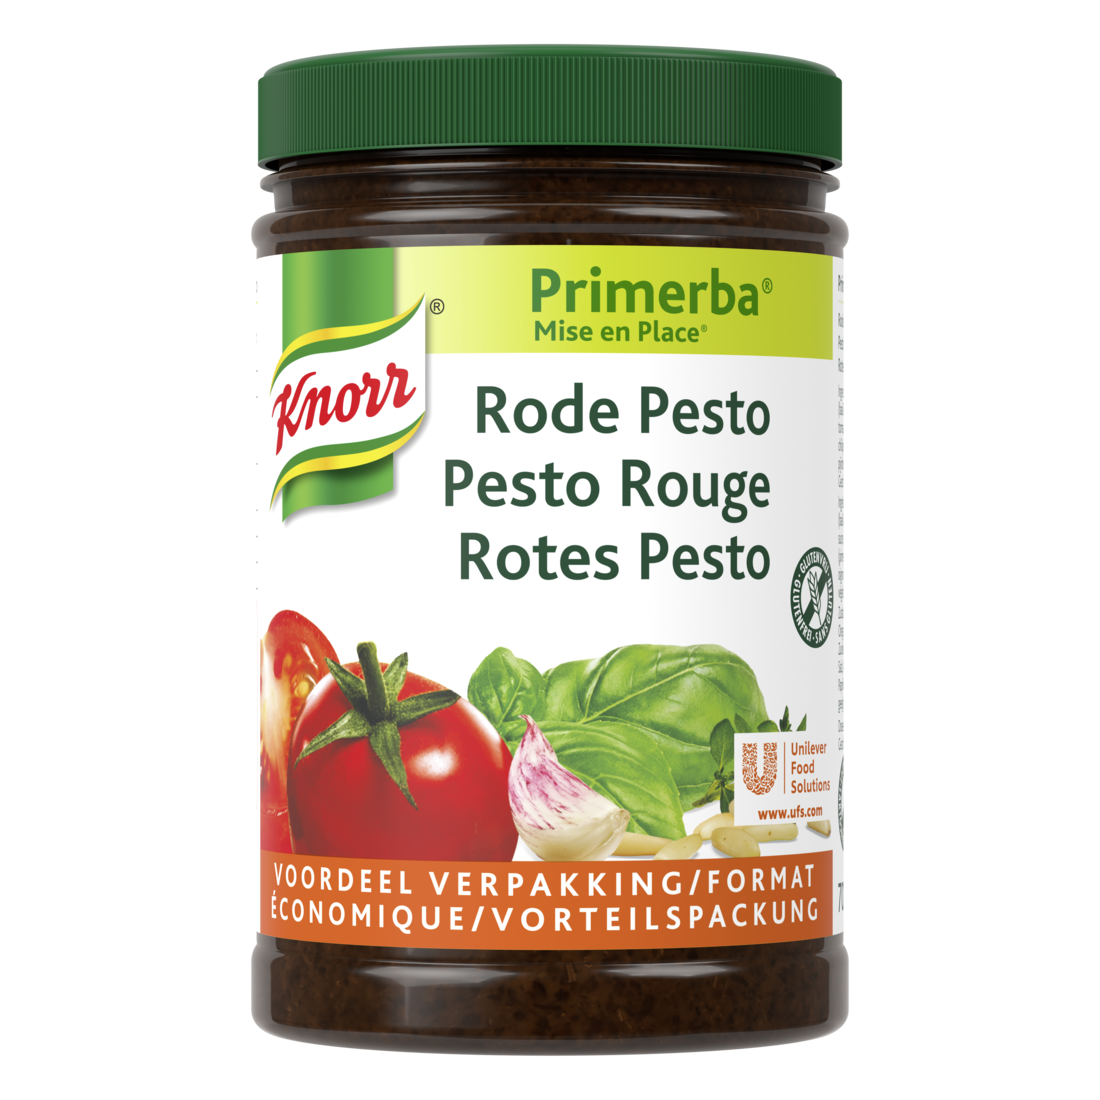 Knorr Mise en place Pesto Rouge 700g - Knorr Mise en place Primerba personnalise et sublime vos plats.